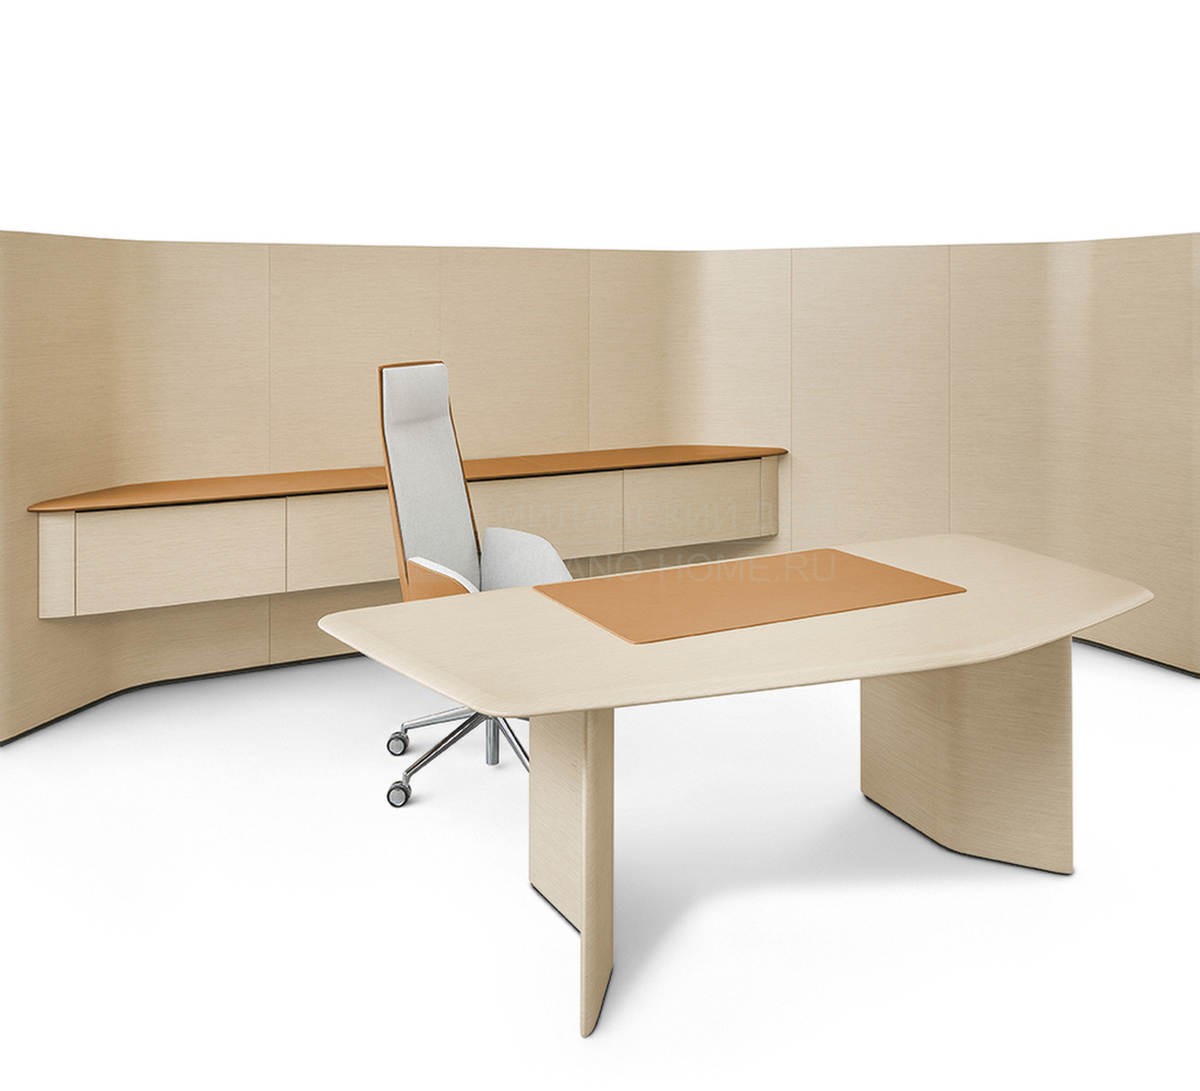 Письменный стол Trust Iconic Desk из Италии фабрики POLTRONA FRAU